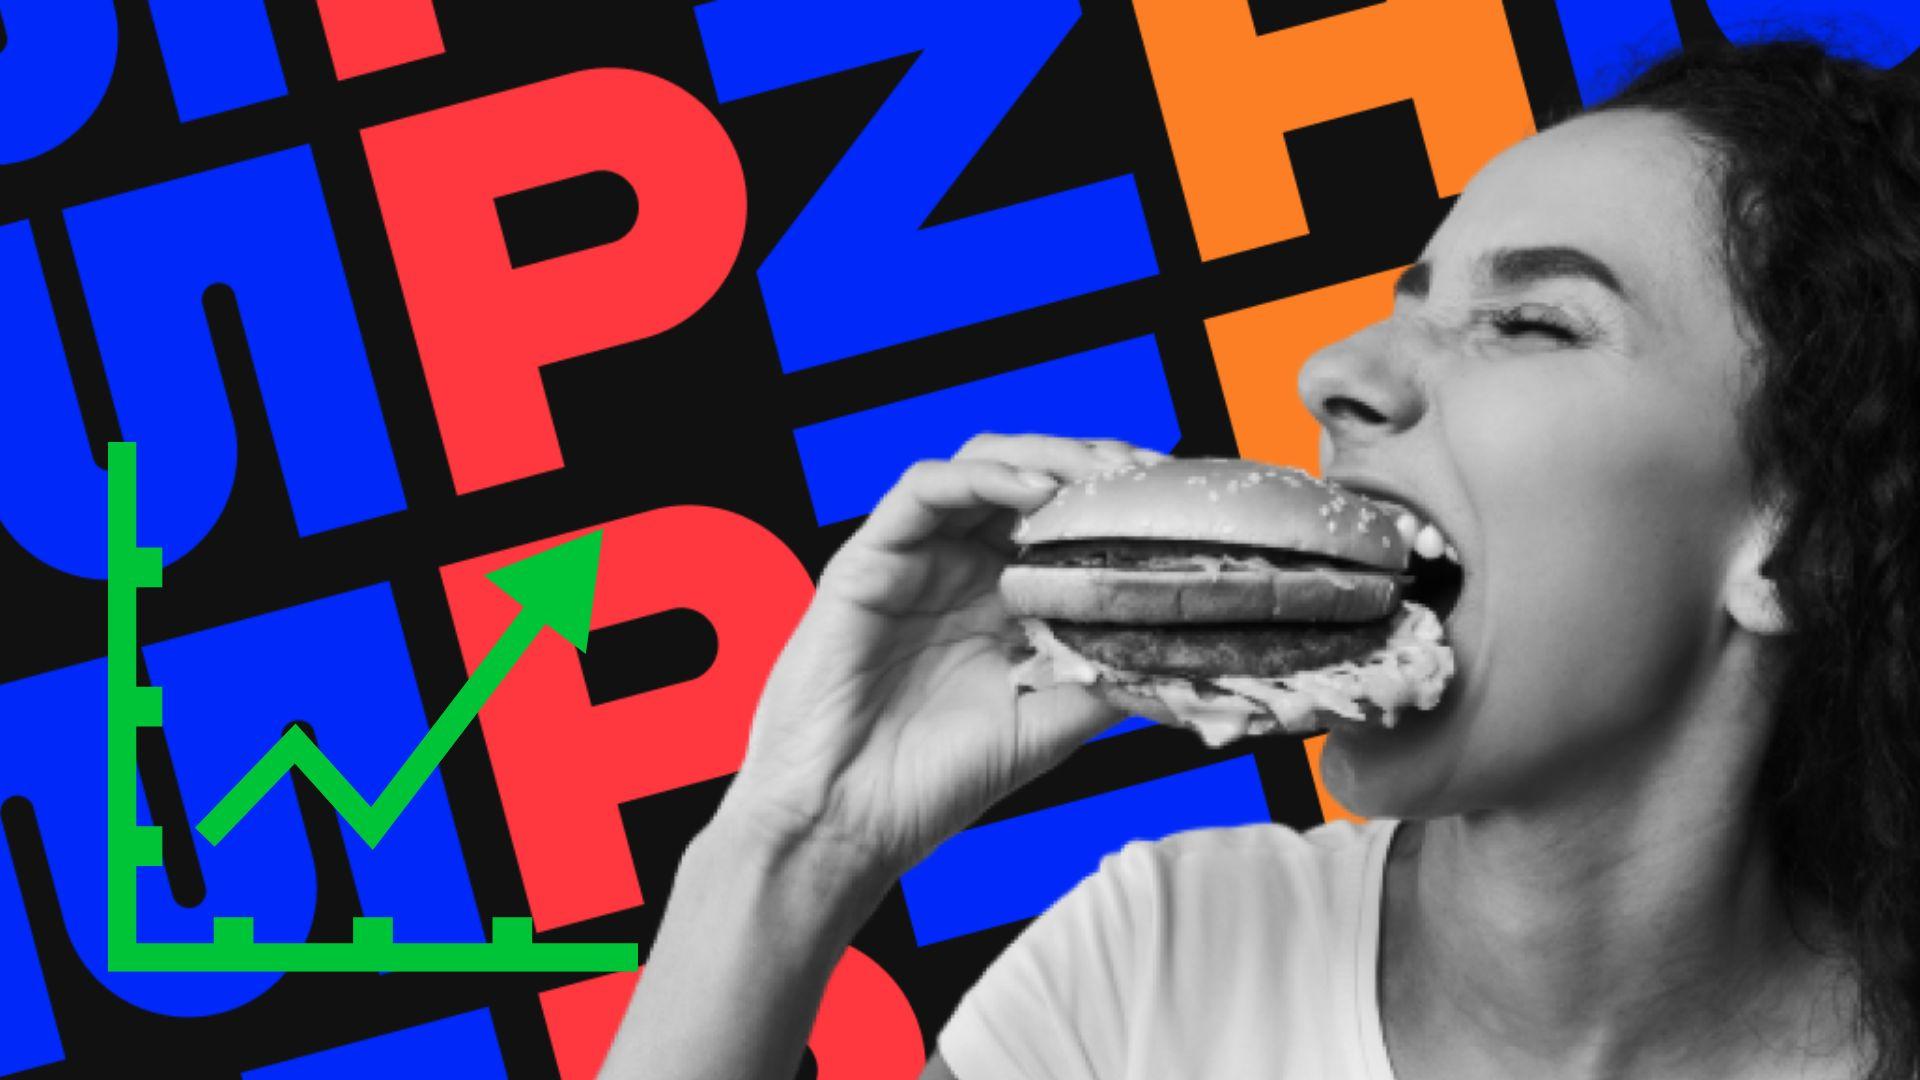 Garota comendo um hambúrguer com o logo da Zamp (ZAMP3) no fundo